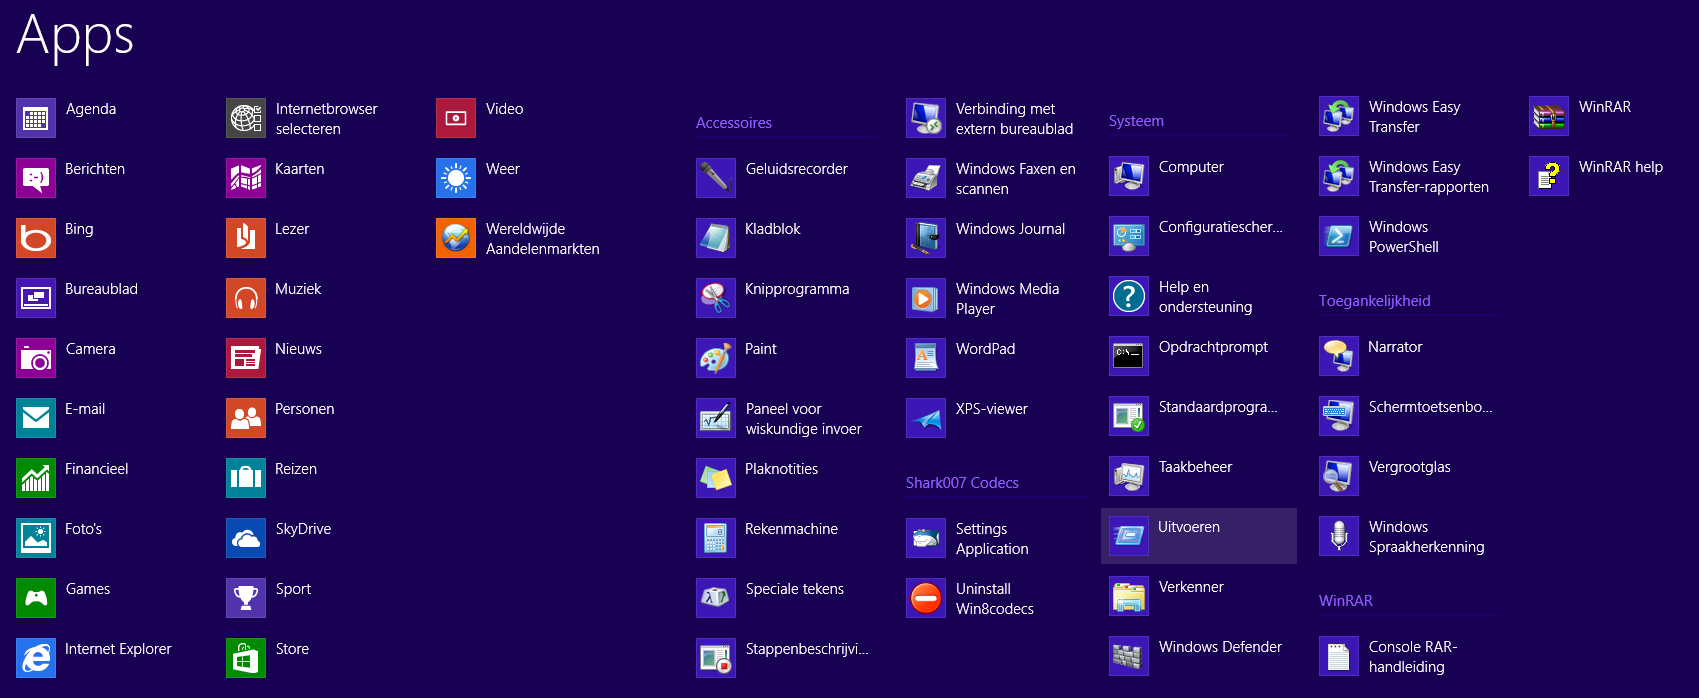 APPS GEBRUIKEN Vanuit het startscherm van Windows 8 kunt u alle standard beschikbare apps laten weergeven, klik hiervoor met de rechtermuisknop op een leeg gedeelte in het scherm en vervolgens